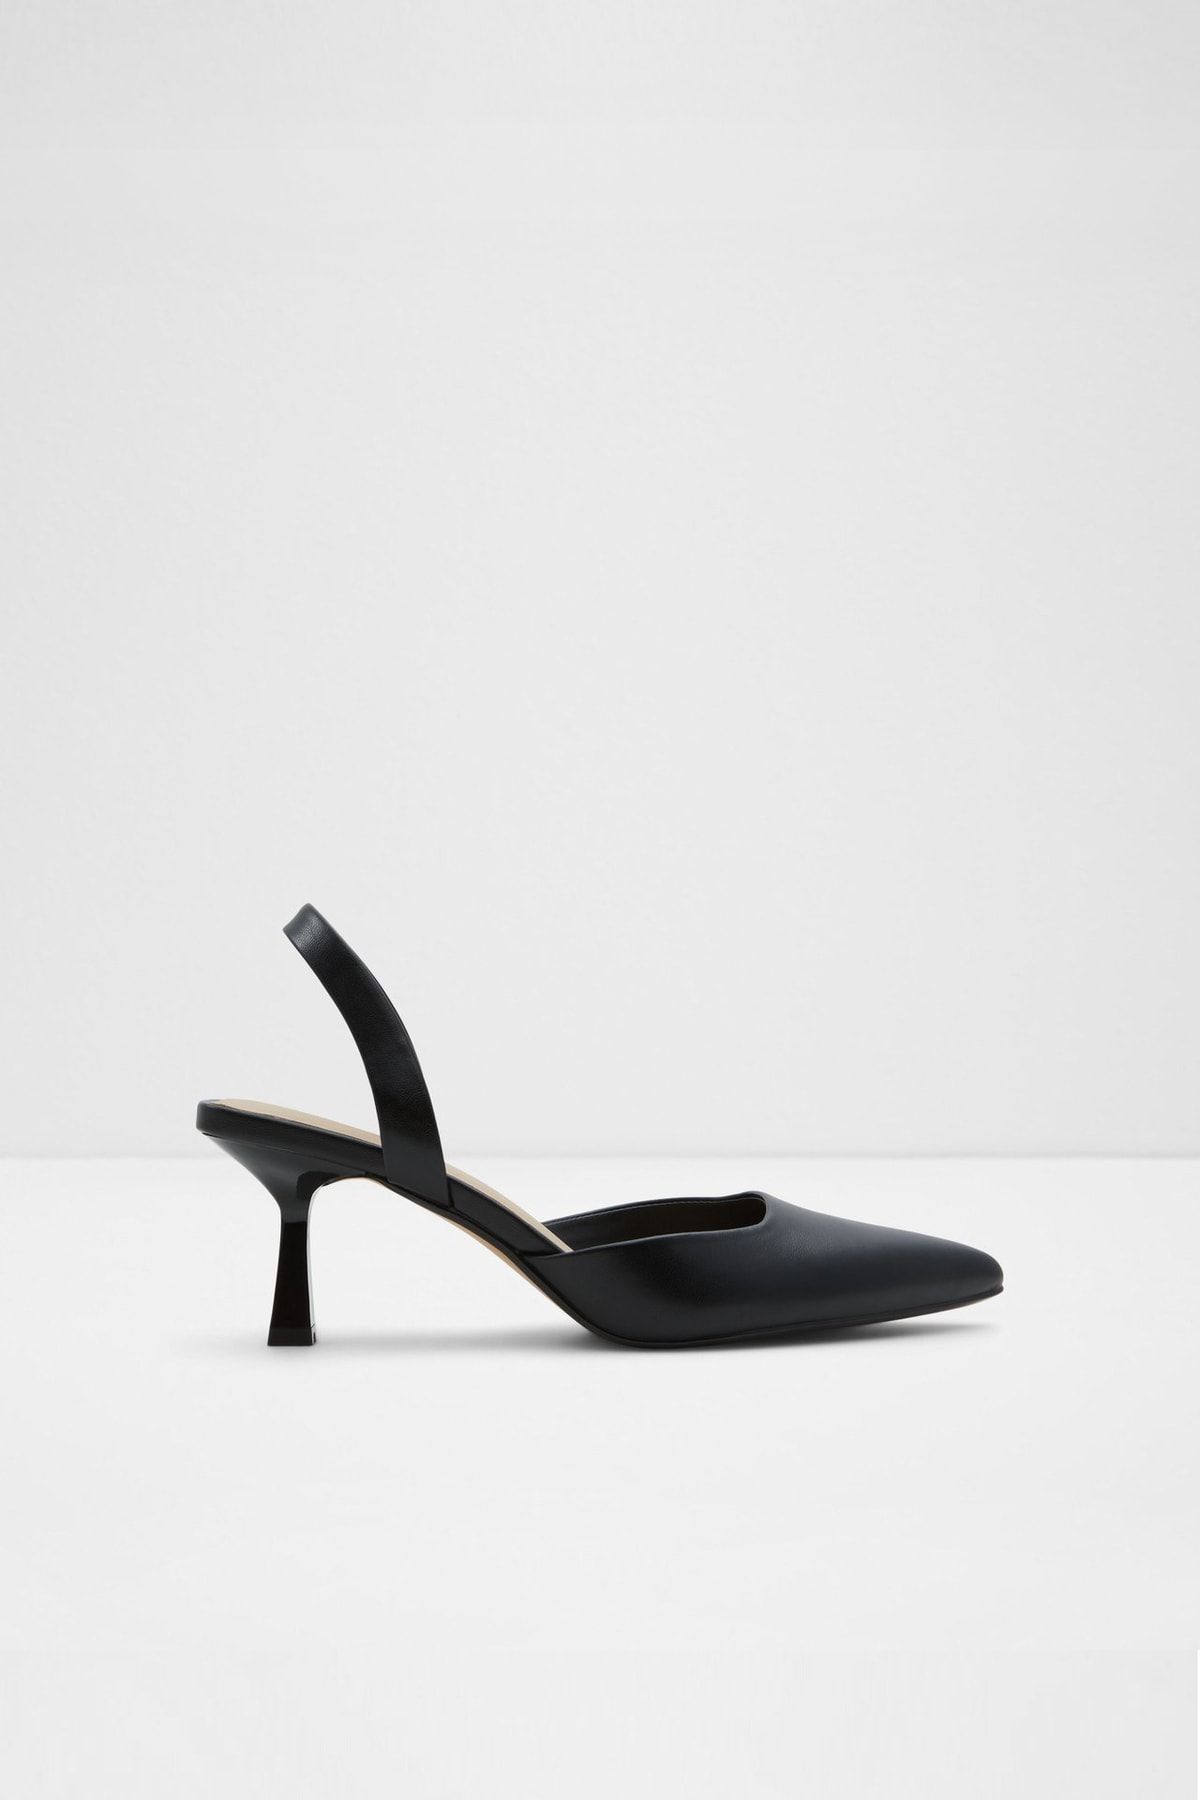 Aldo Basantı - Siyah Kadın Topuklu Ayakkabı